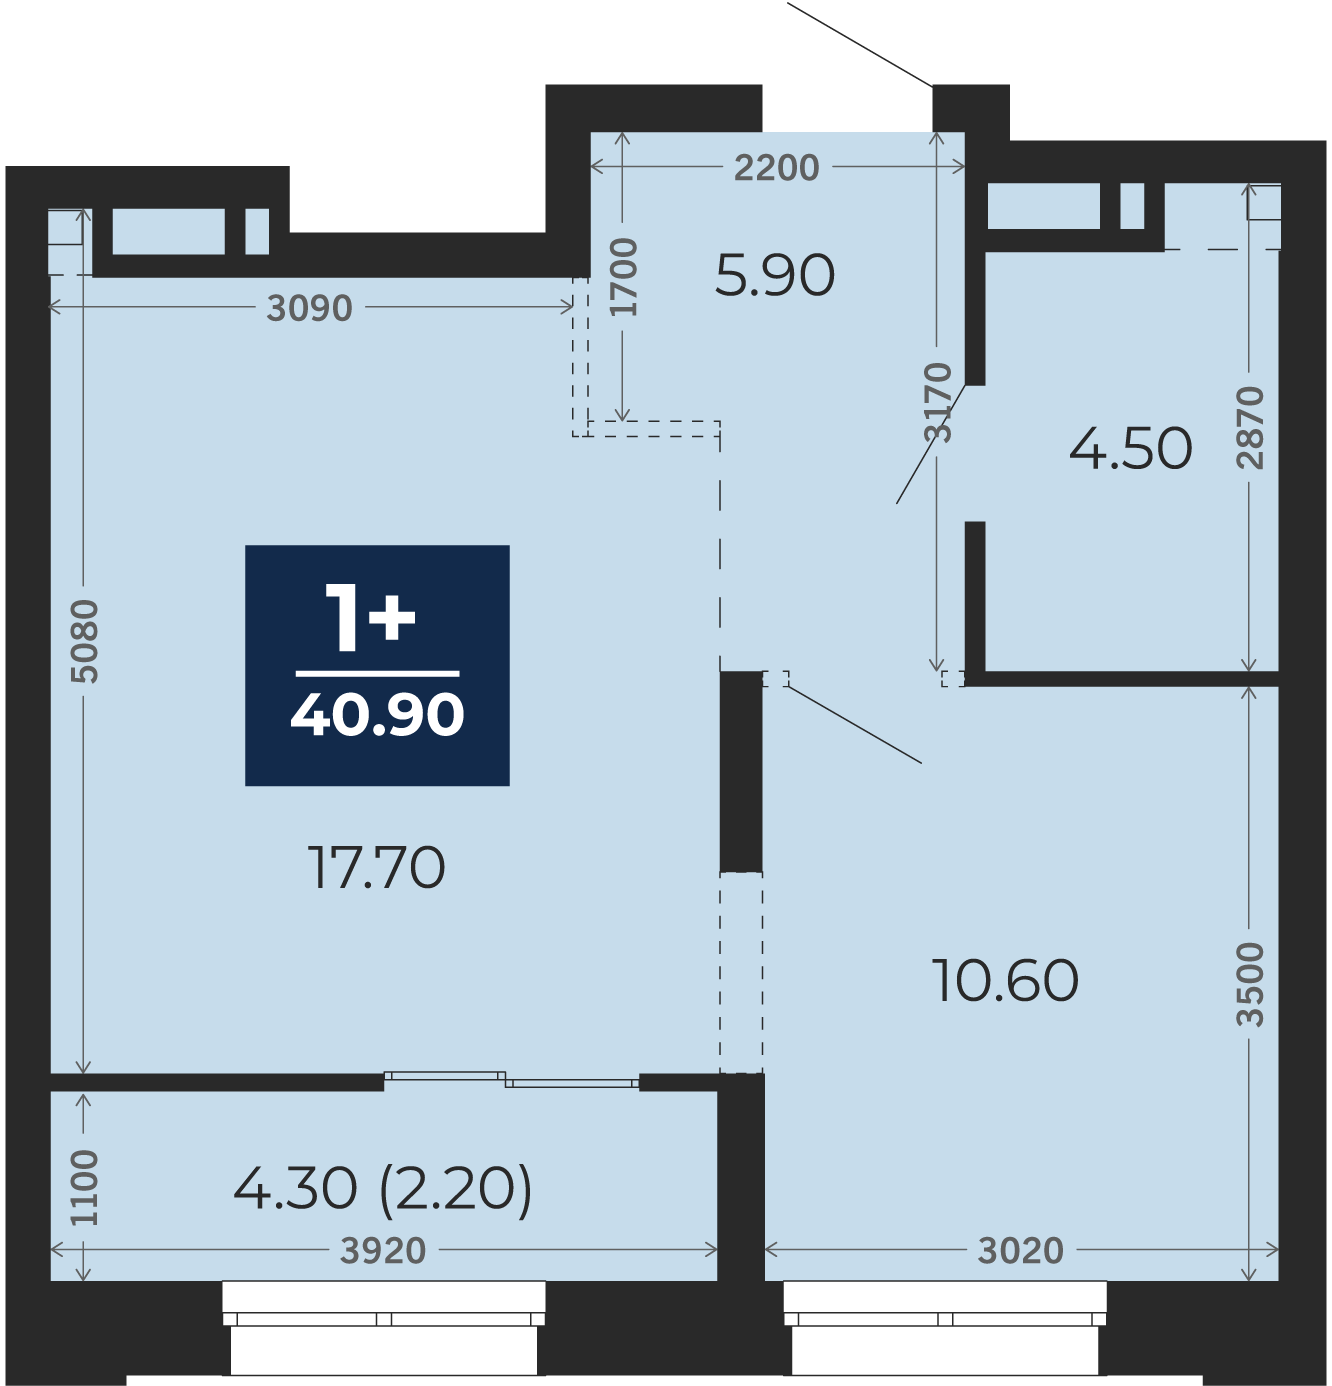 Квартира № 364, 1-комнатная, 40.9 кв. м, 3 этаж